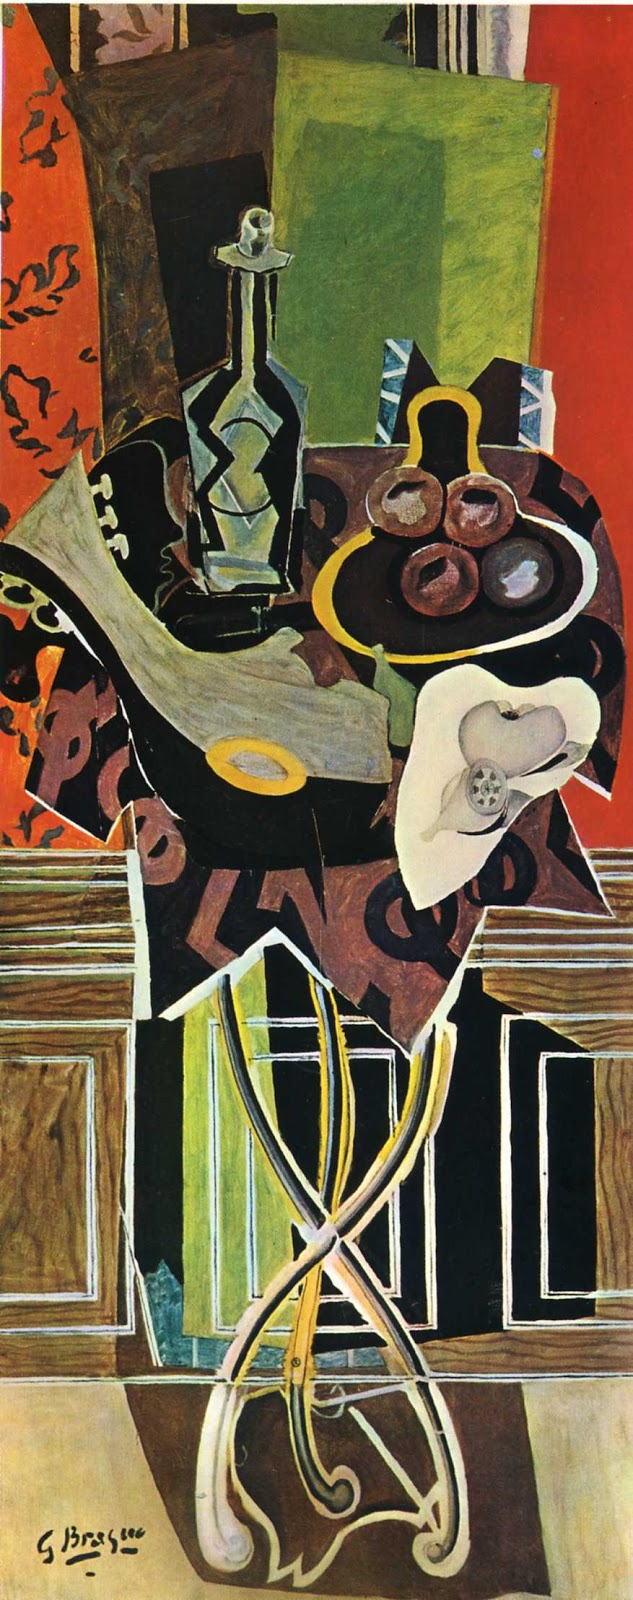 Georges+Braque (16).jpg